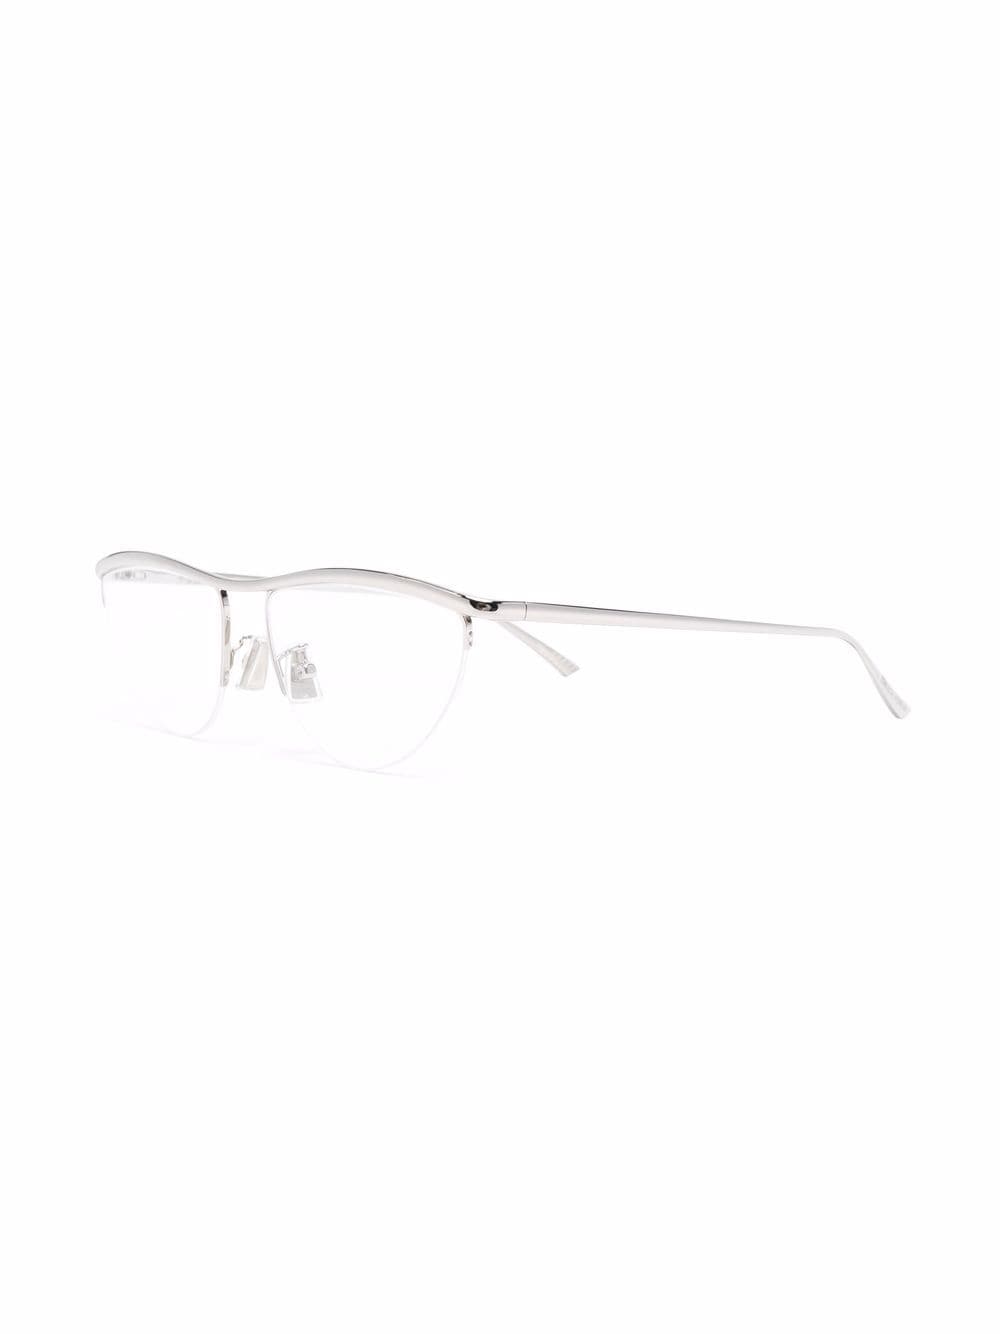 фото Bottega veneta eyewear очки bv1132o в полуободковой оправе